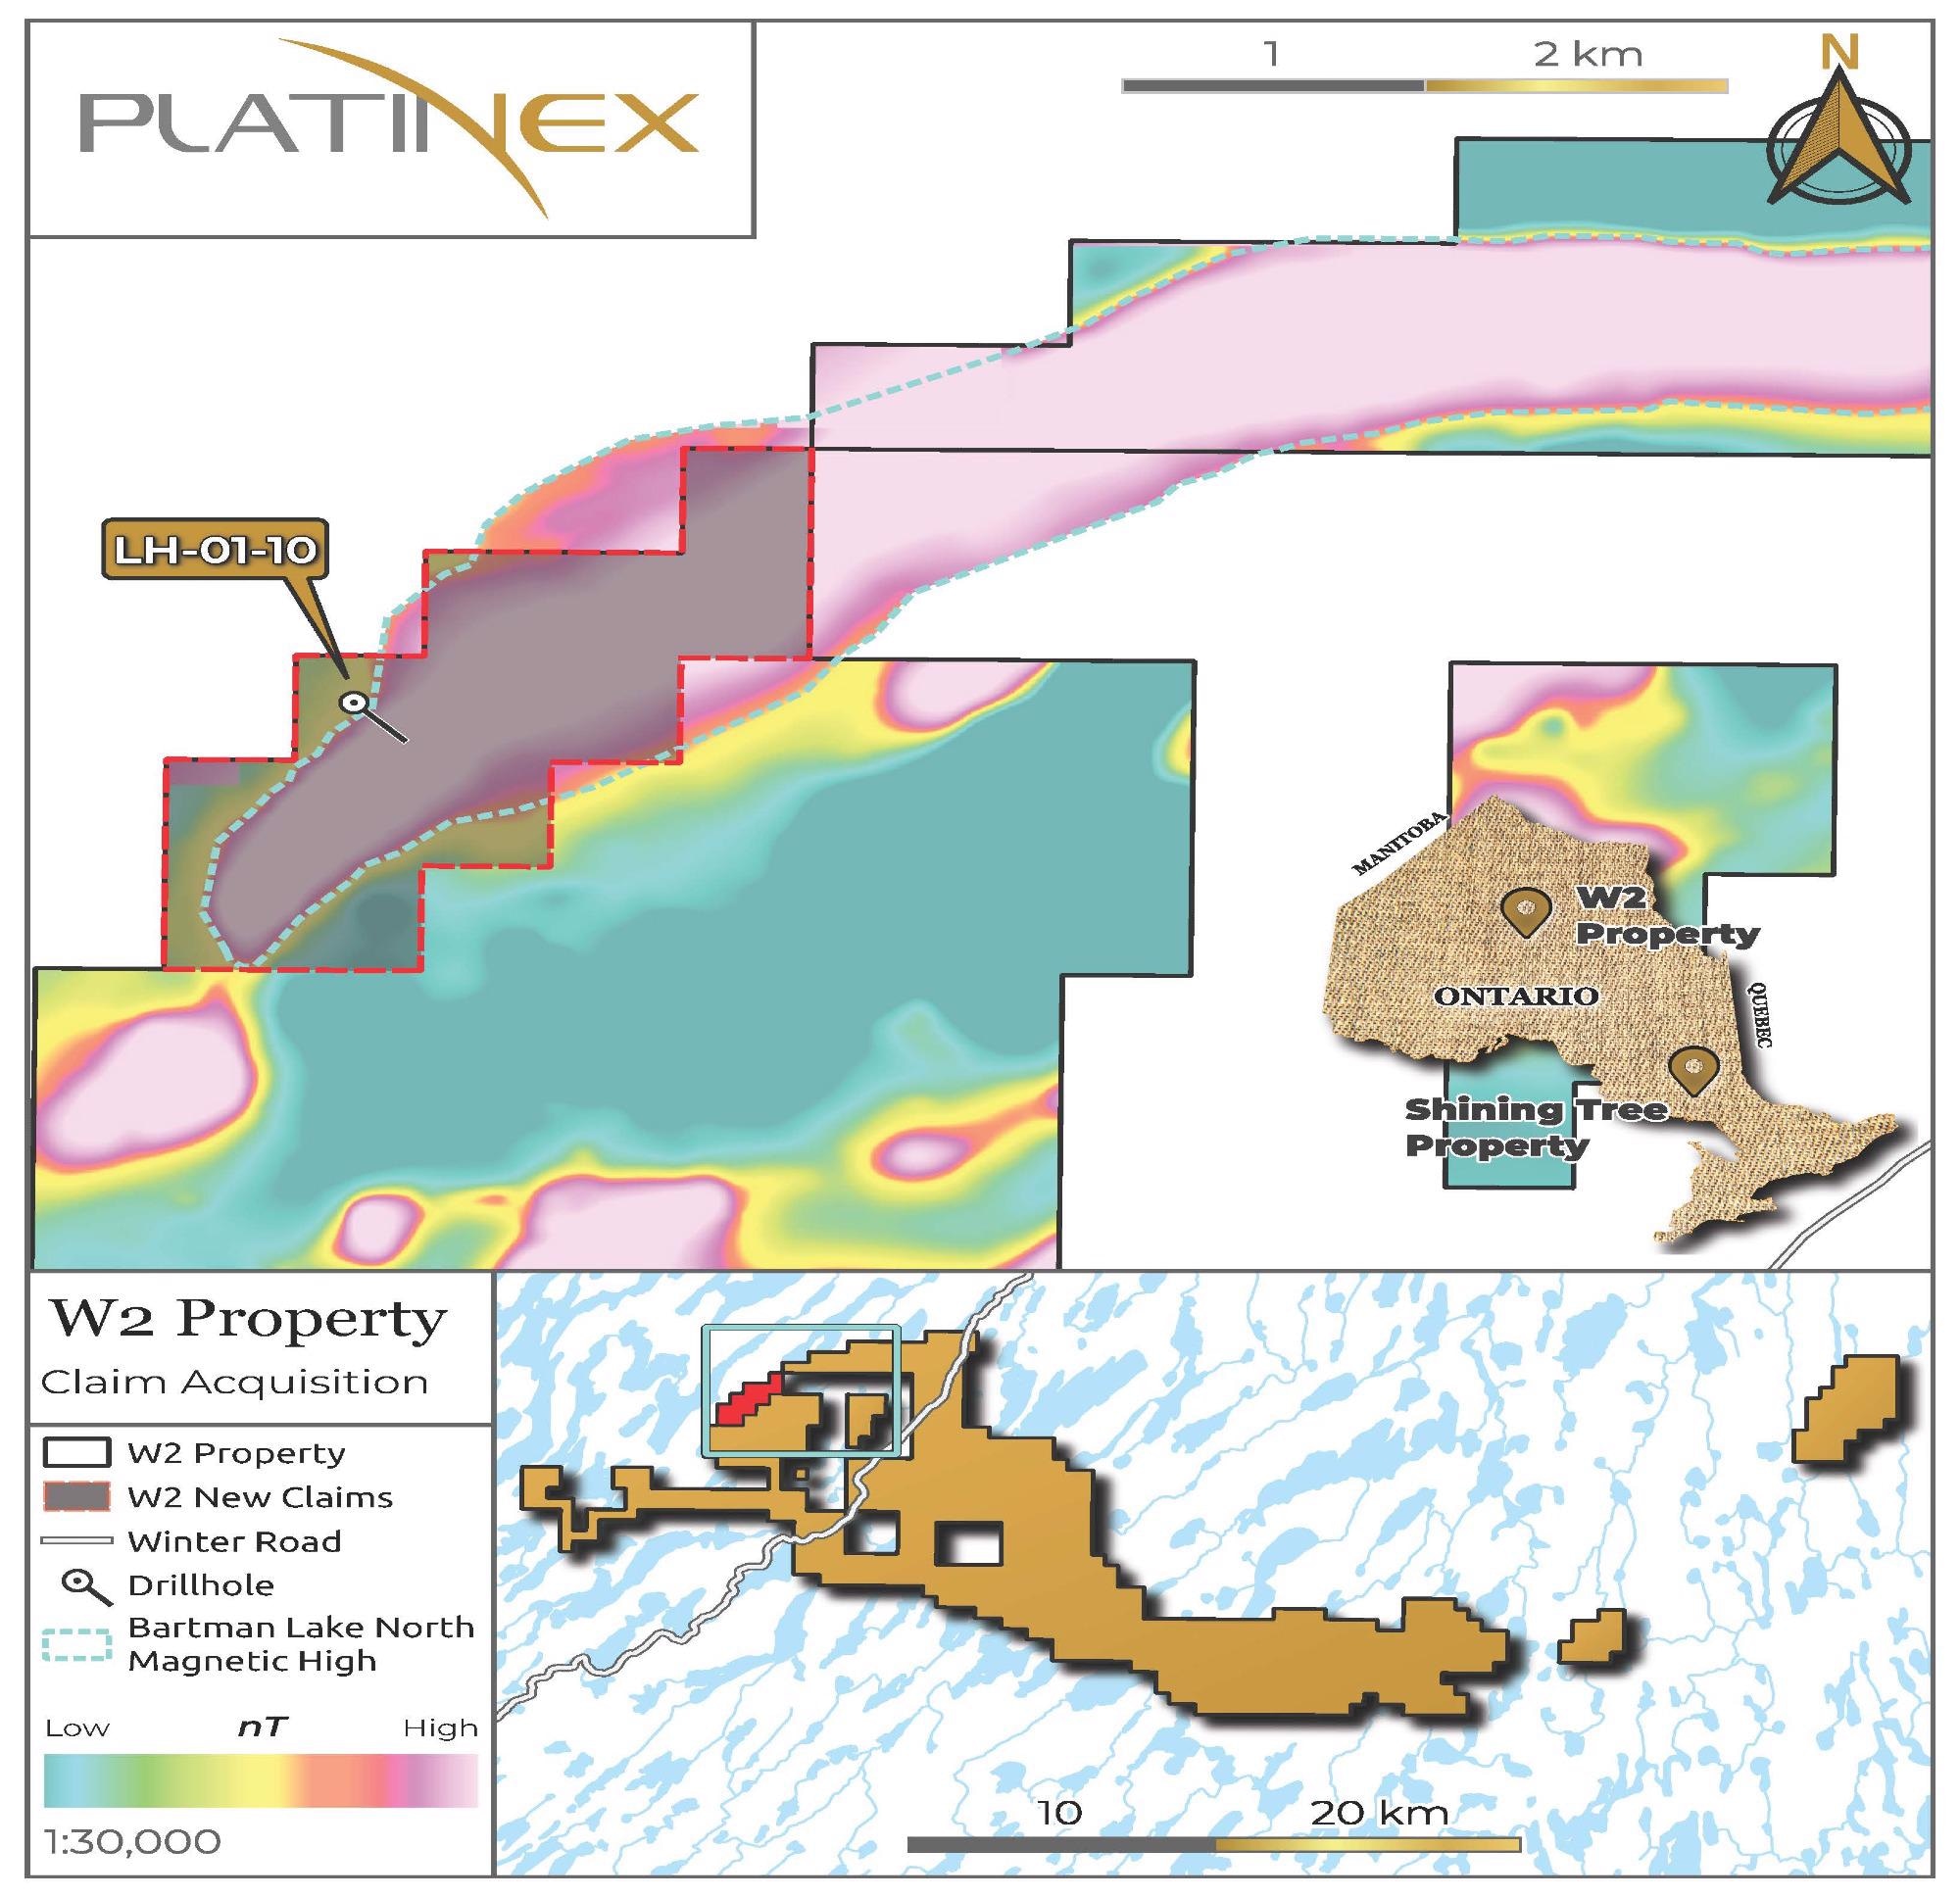 Platinex Declares Its Purchase of Titanium-Vanadium Claims Adjacent to W2 Copper-Nickel-PGE in Canada.